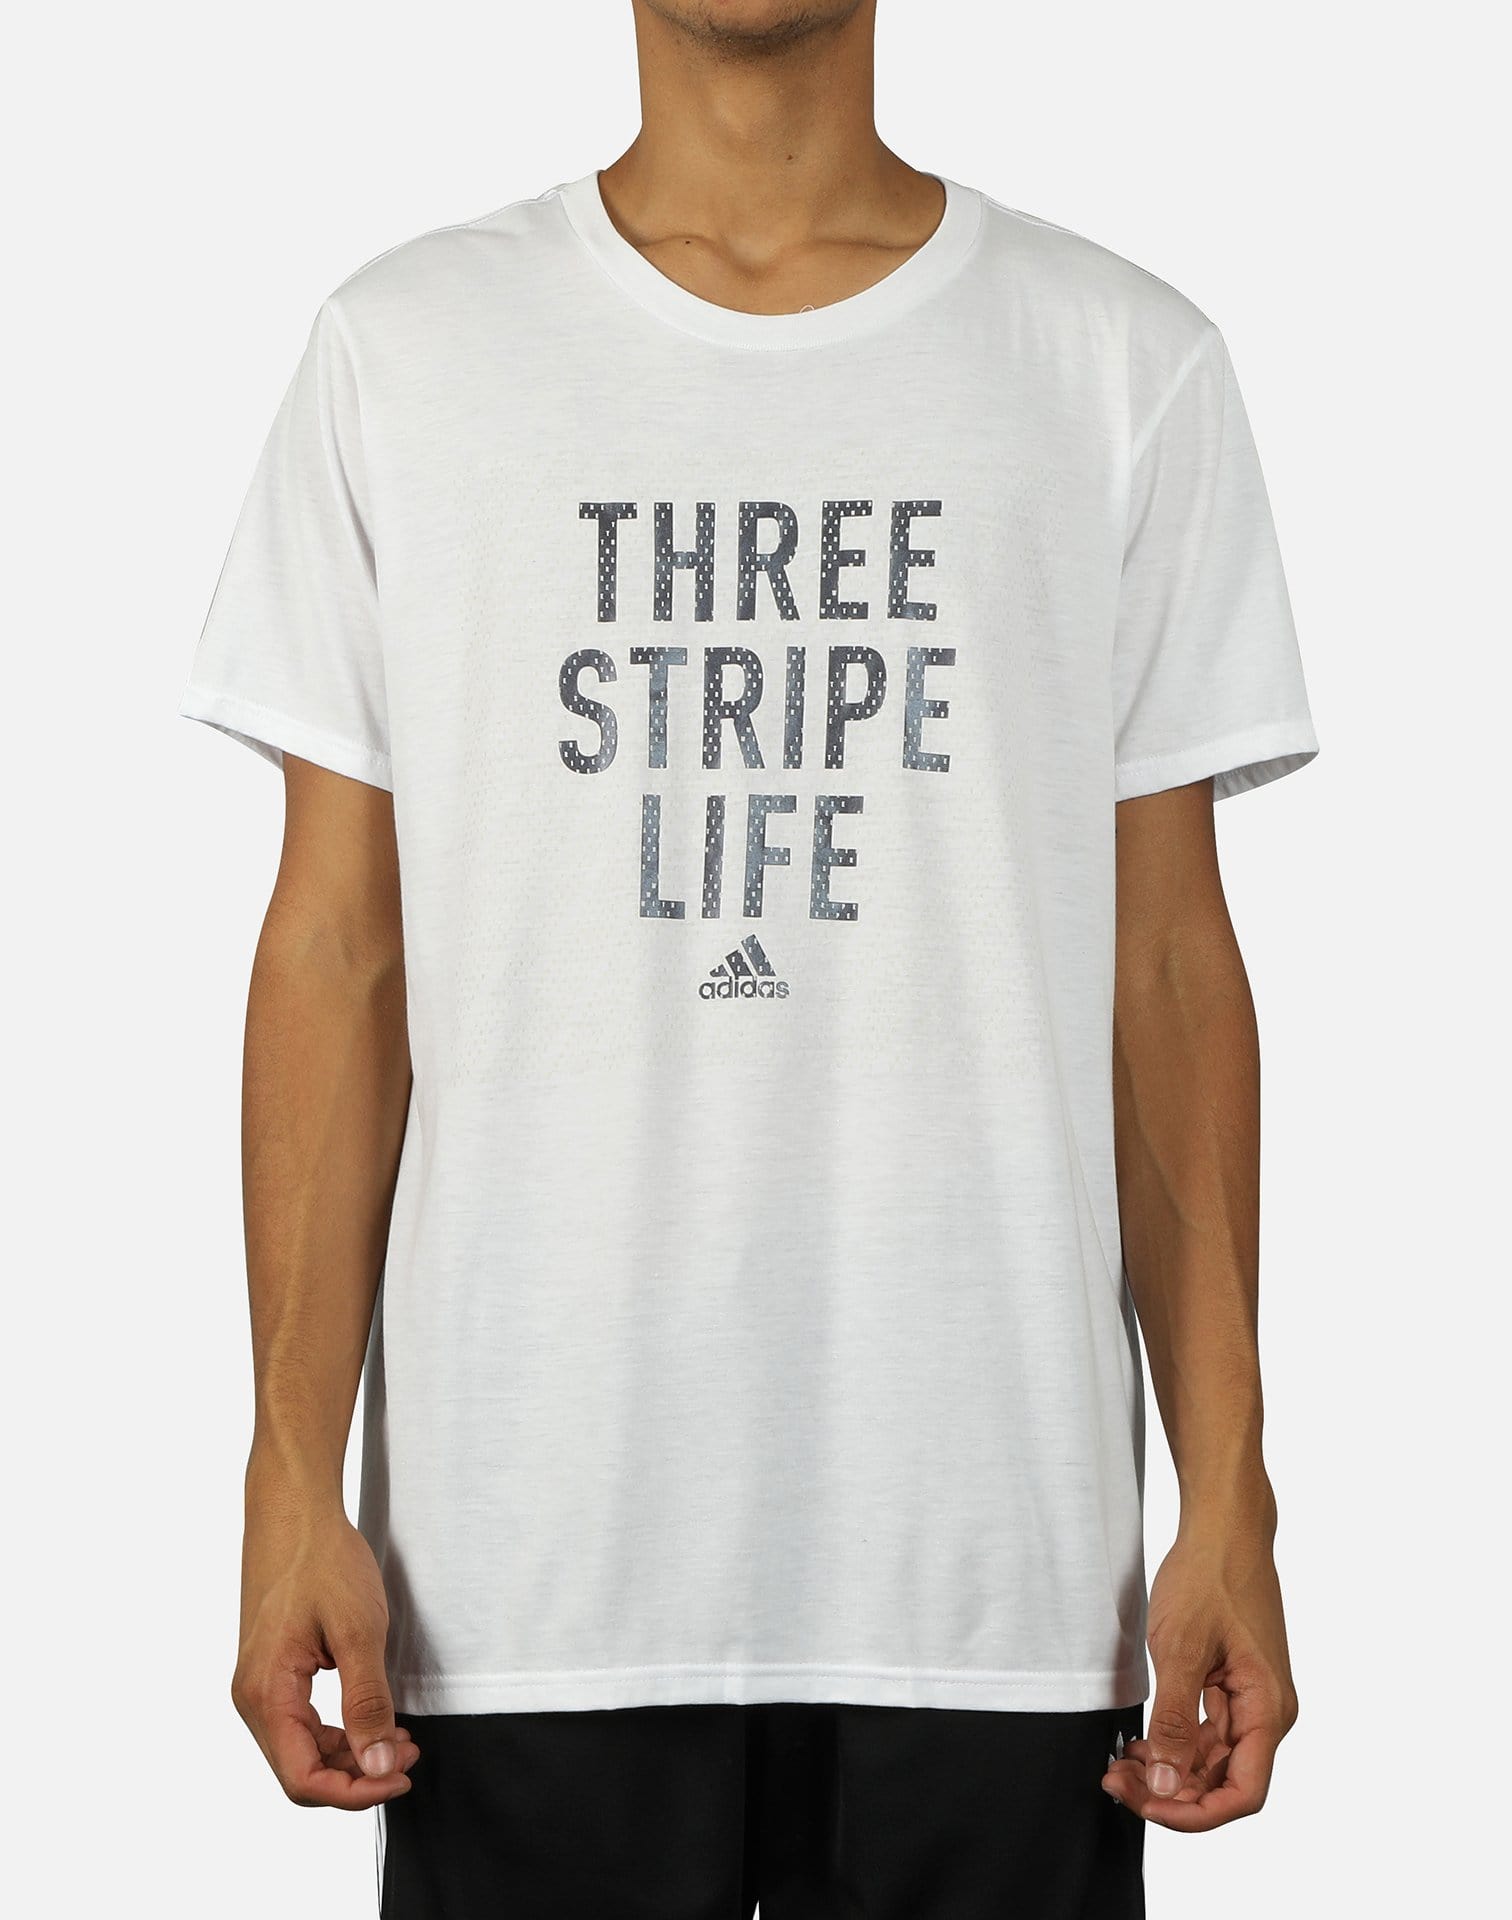 adidas three stripe life t shirt